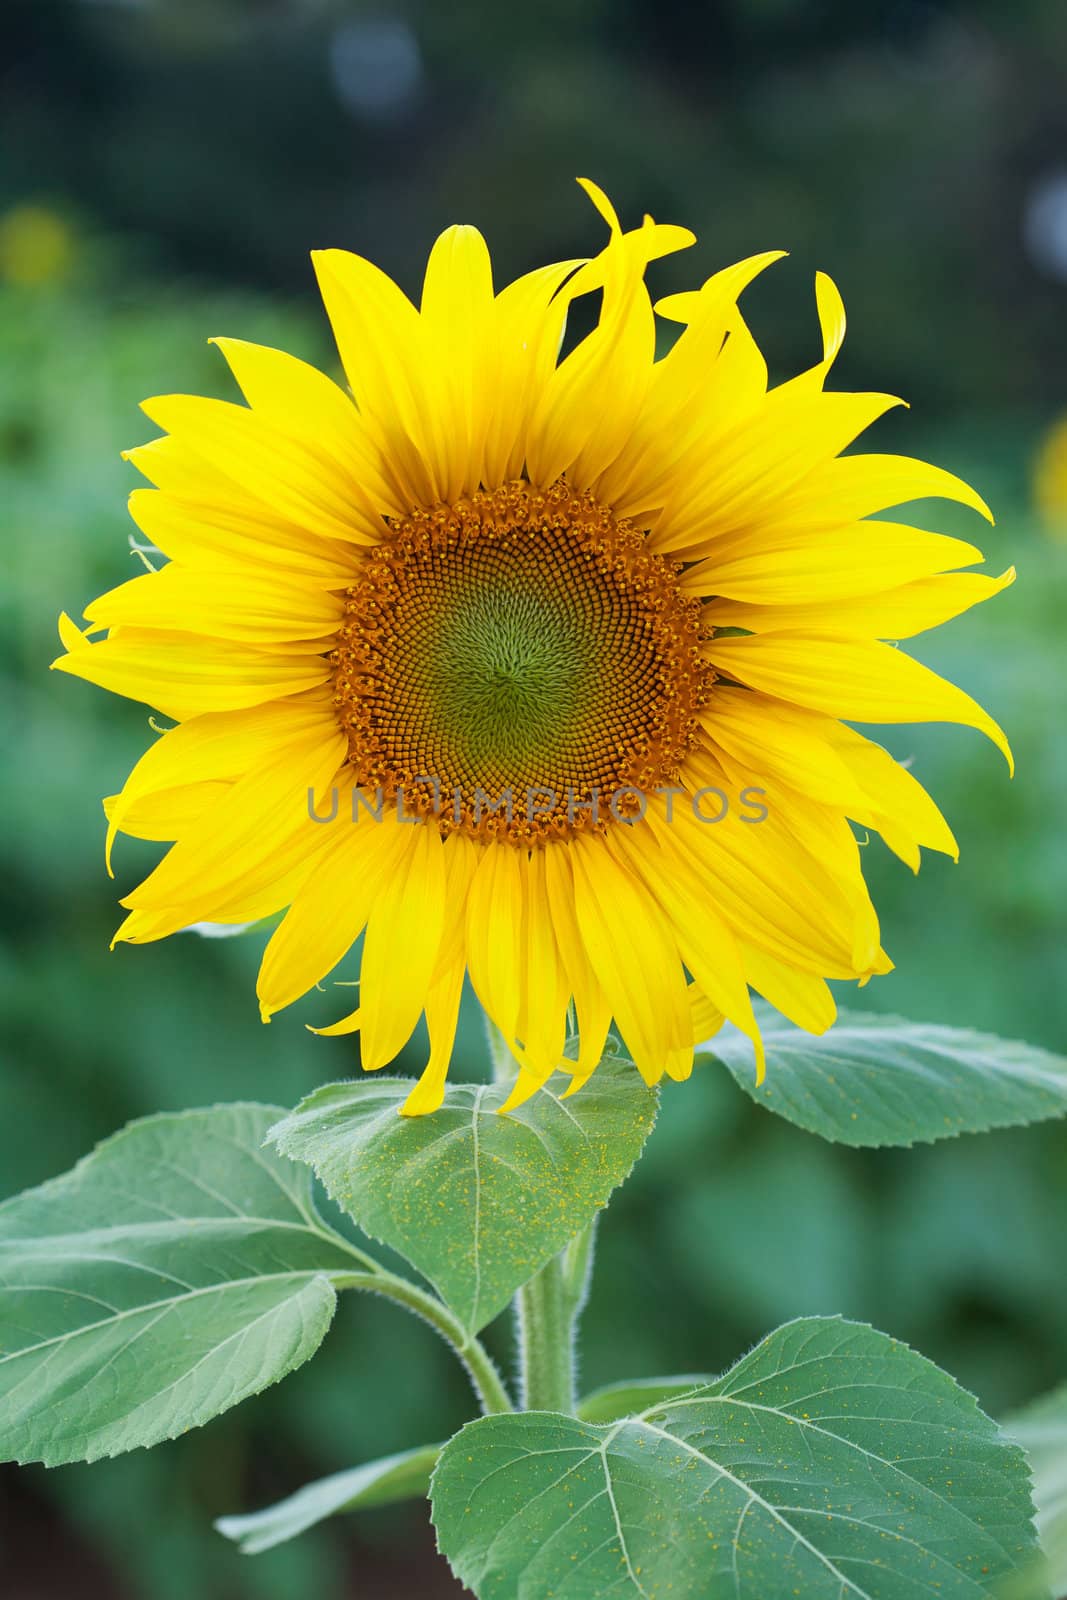 Fully blossomed sunflower